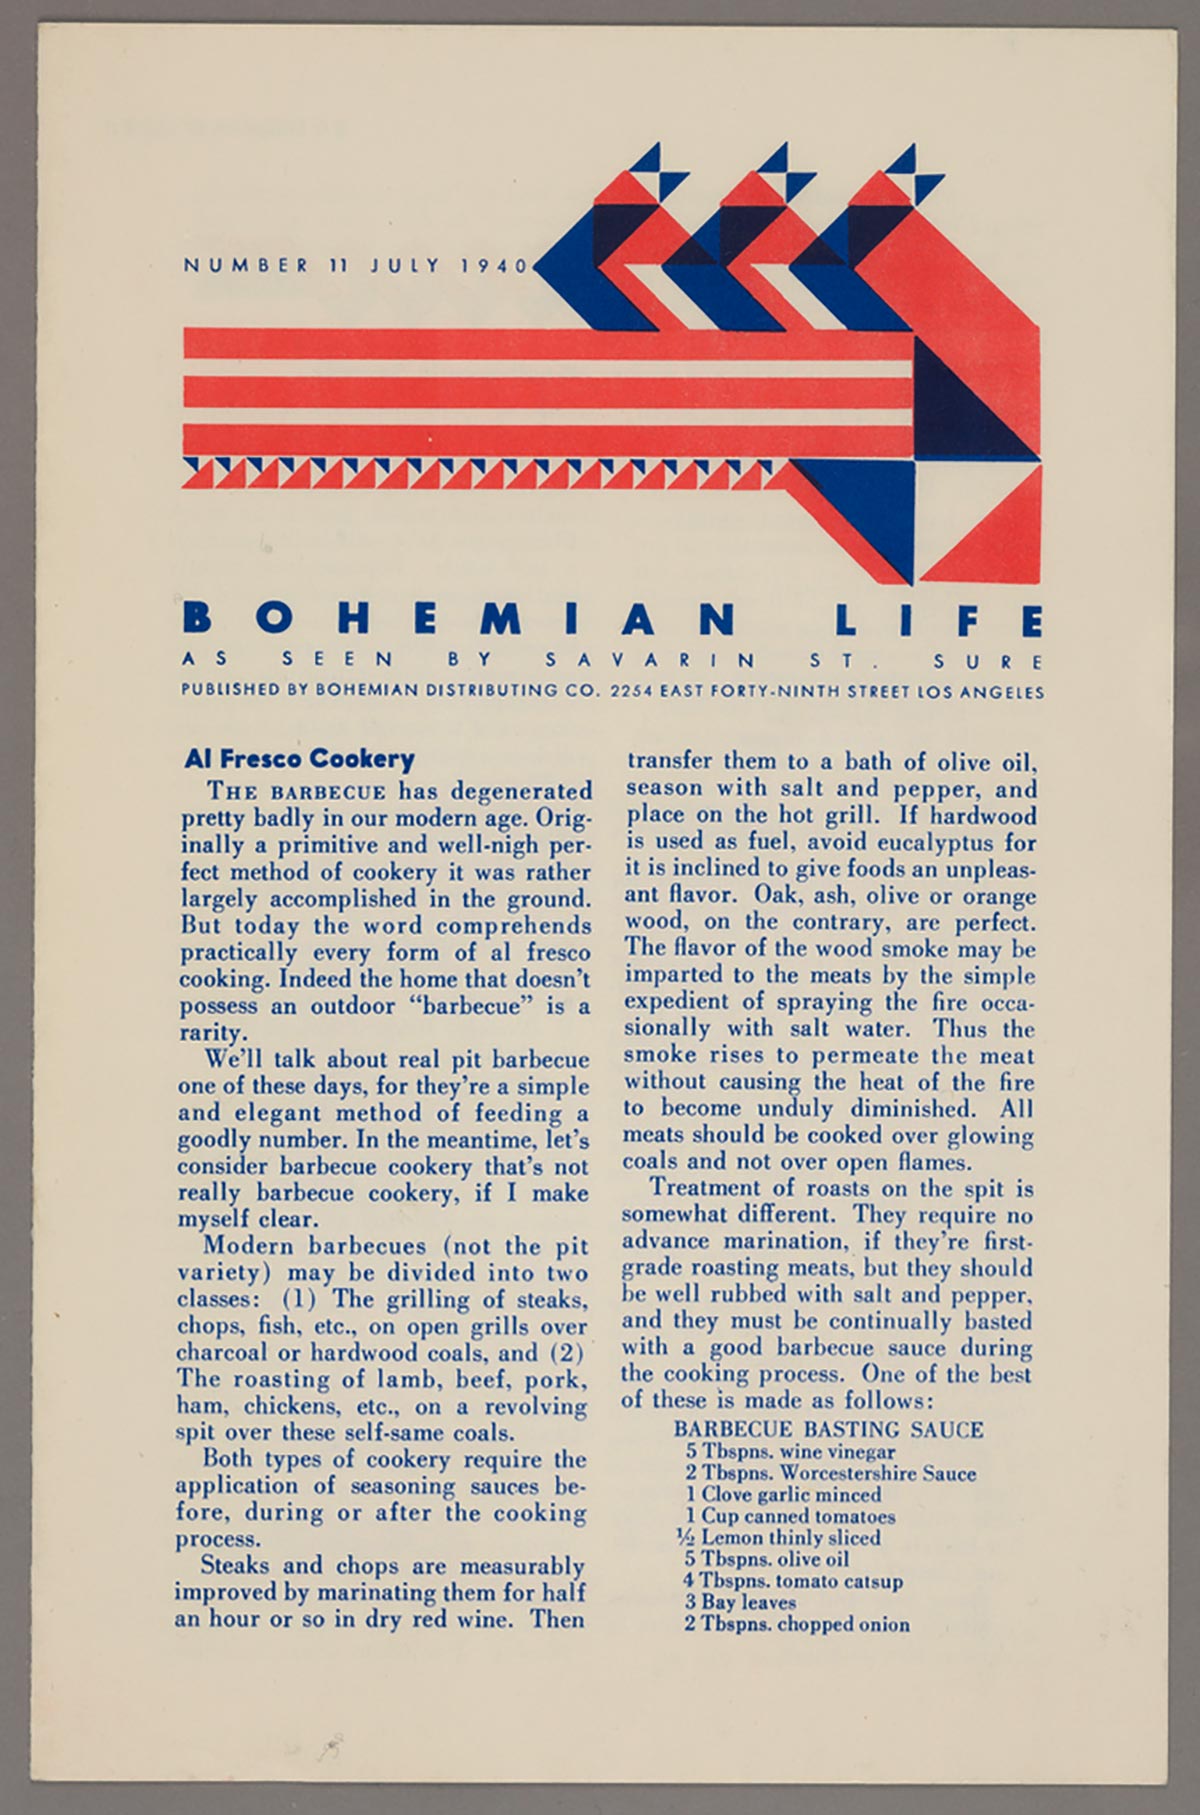 Bohemian Life 1940